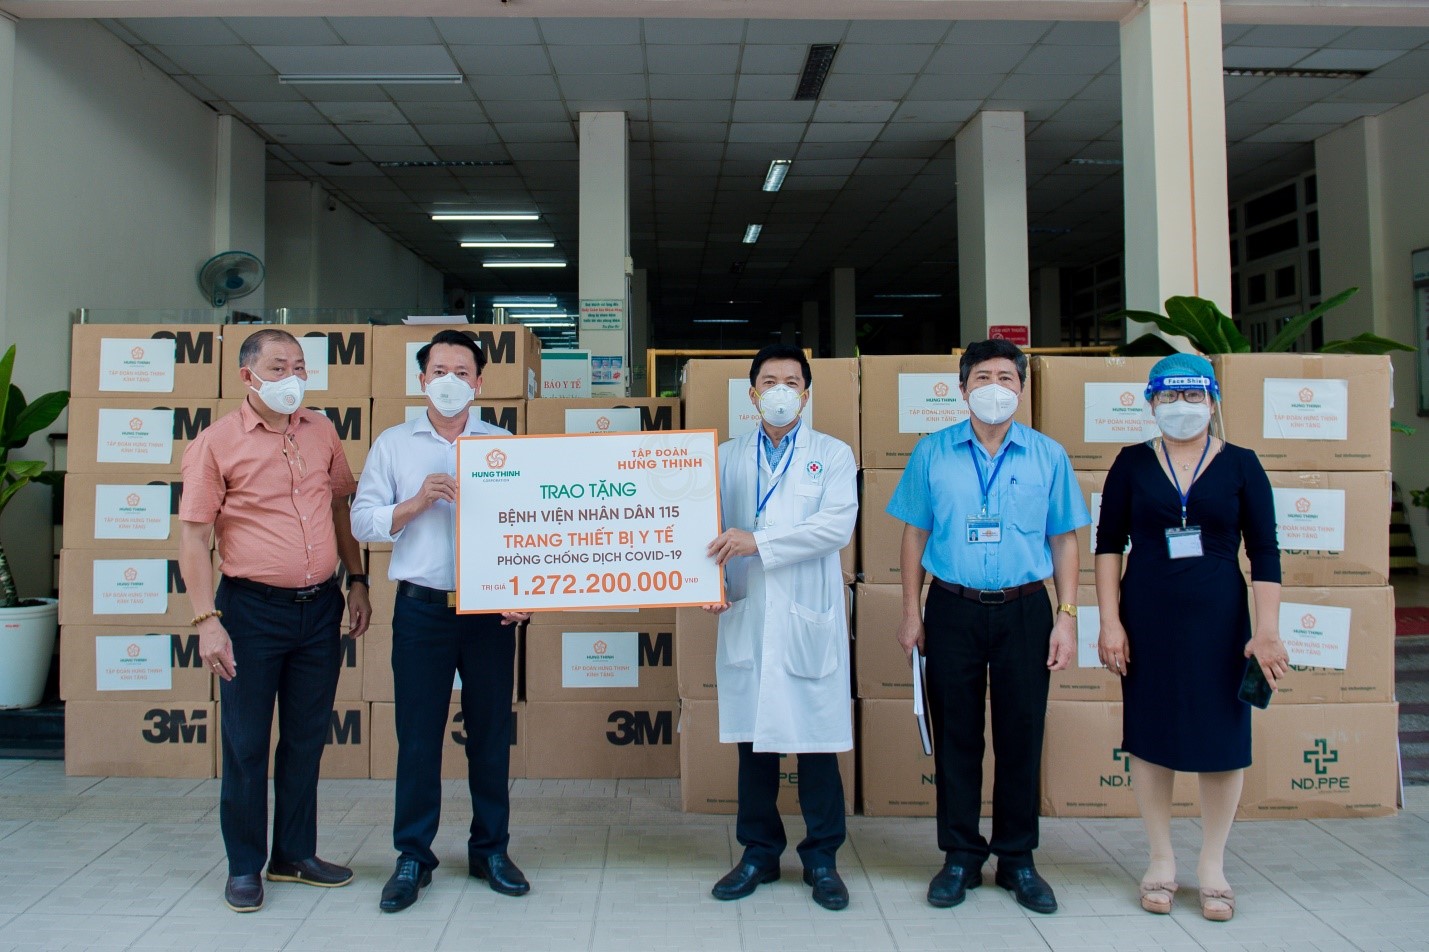 Đại diện Tập đoàn Hưng Thịnh hỗ trợ trang thiết bị y tế cho Bệnh viện Nhân dân 115.